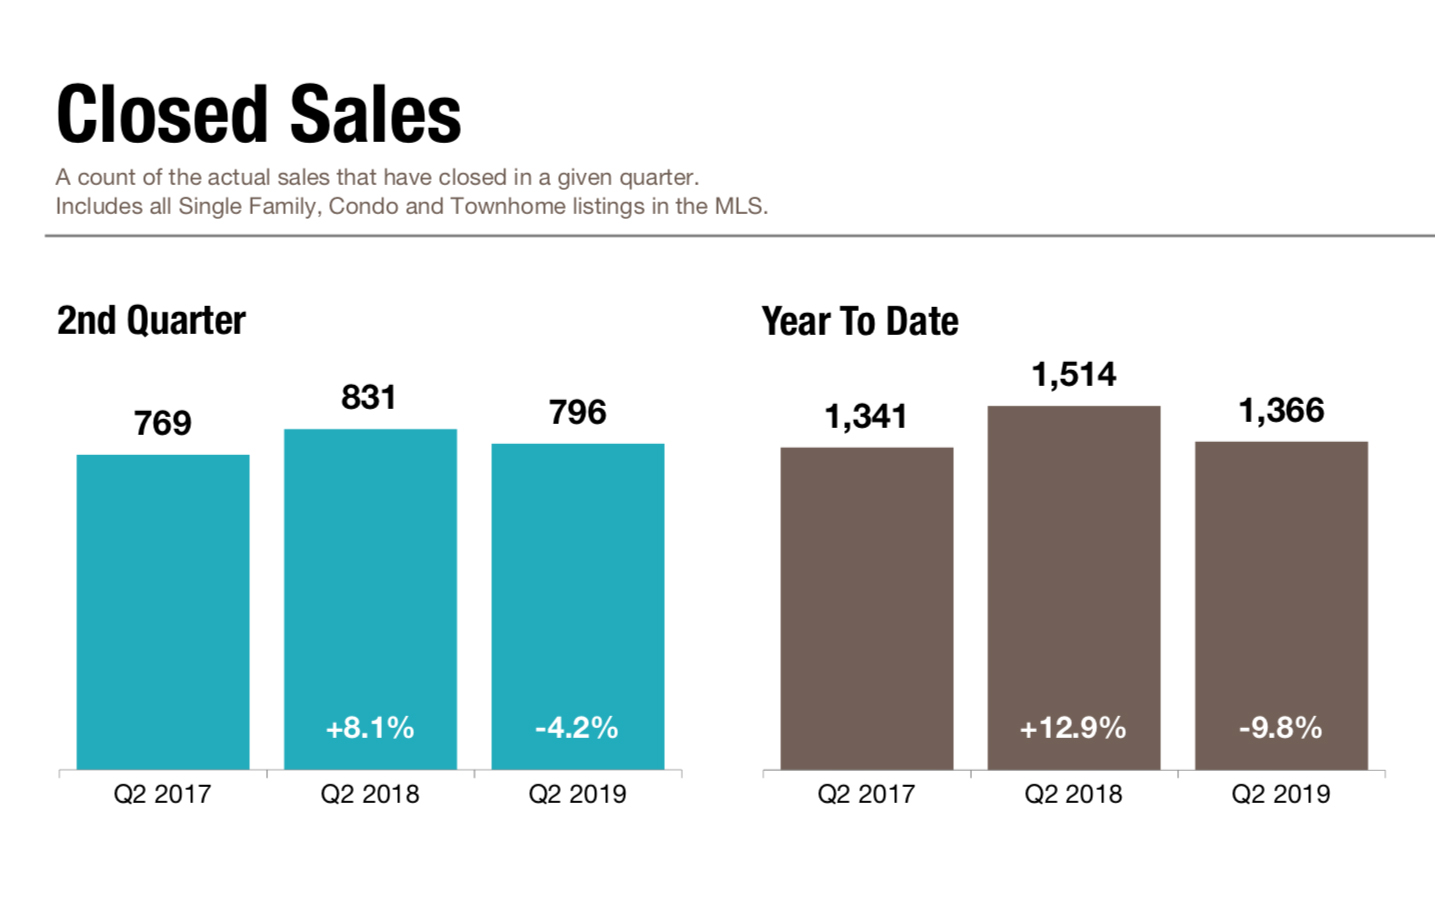 Closed Sales Statistics - Q2 2019